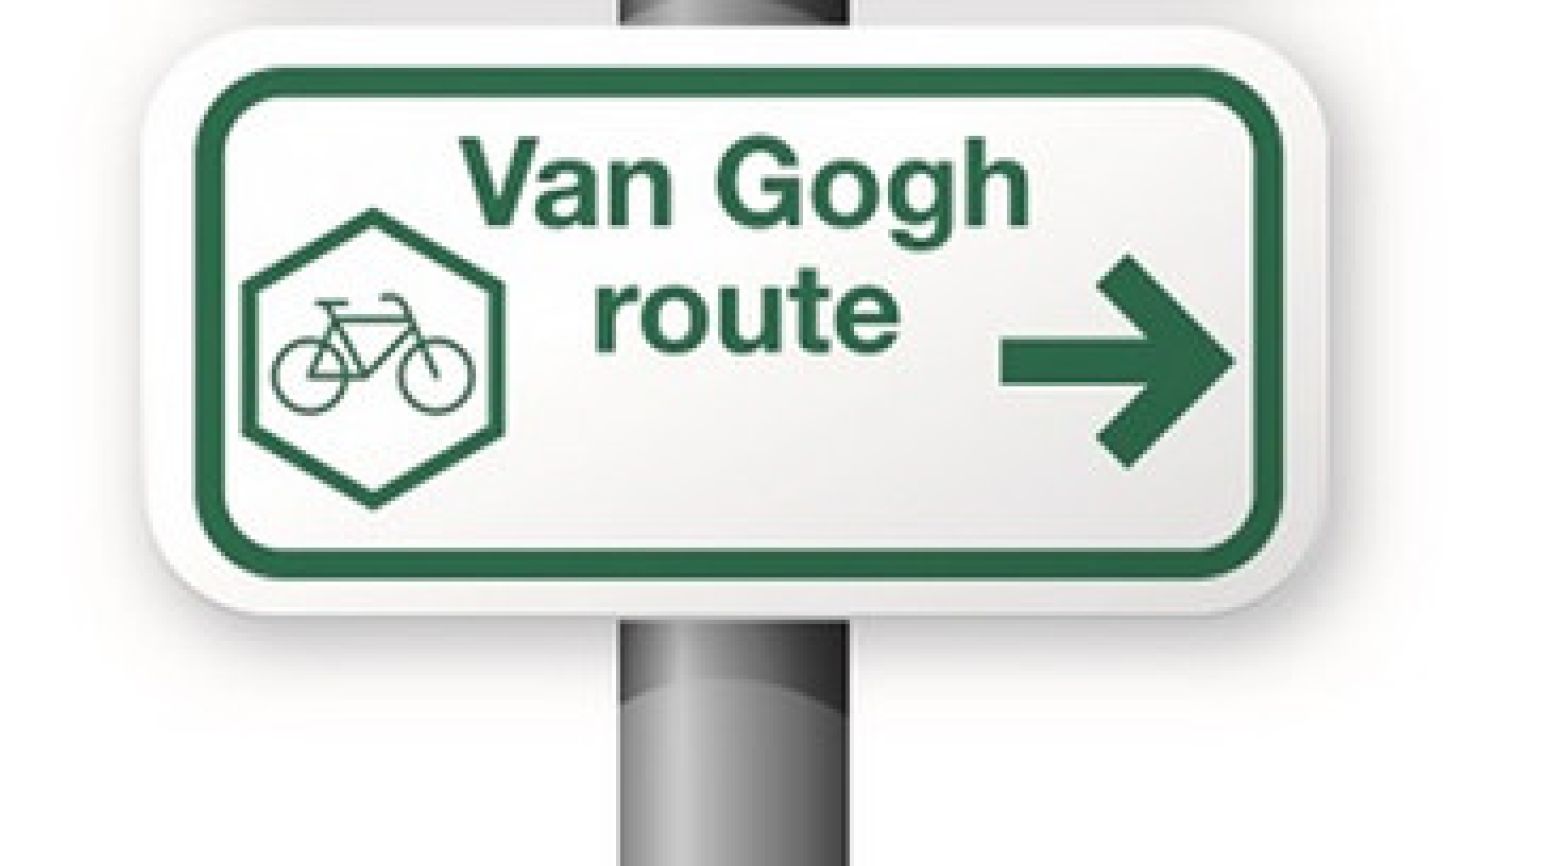 Volg de fietsroute aan de hand van de Van Gogh-bordjes. Foto: Van Gogh Brabant